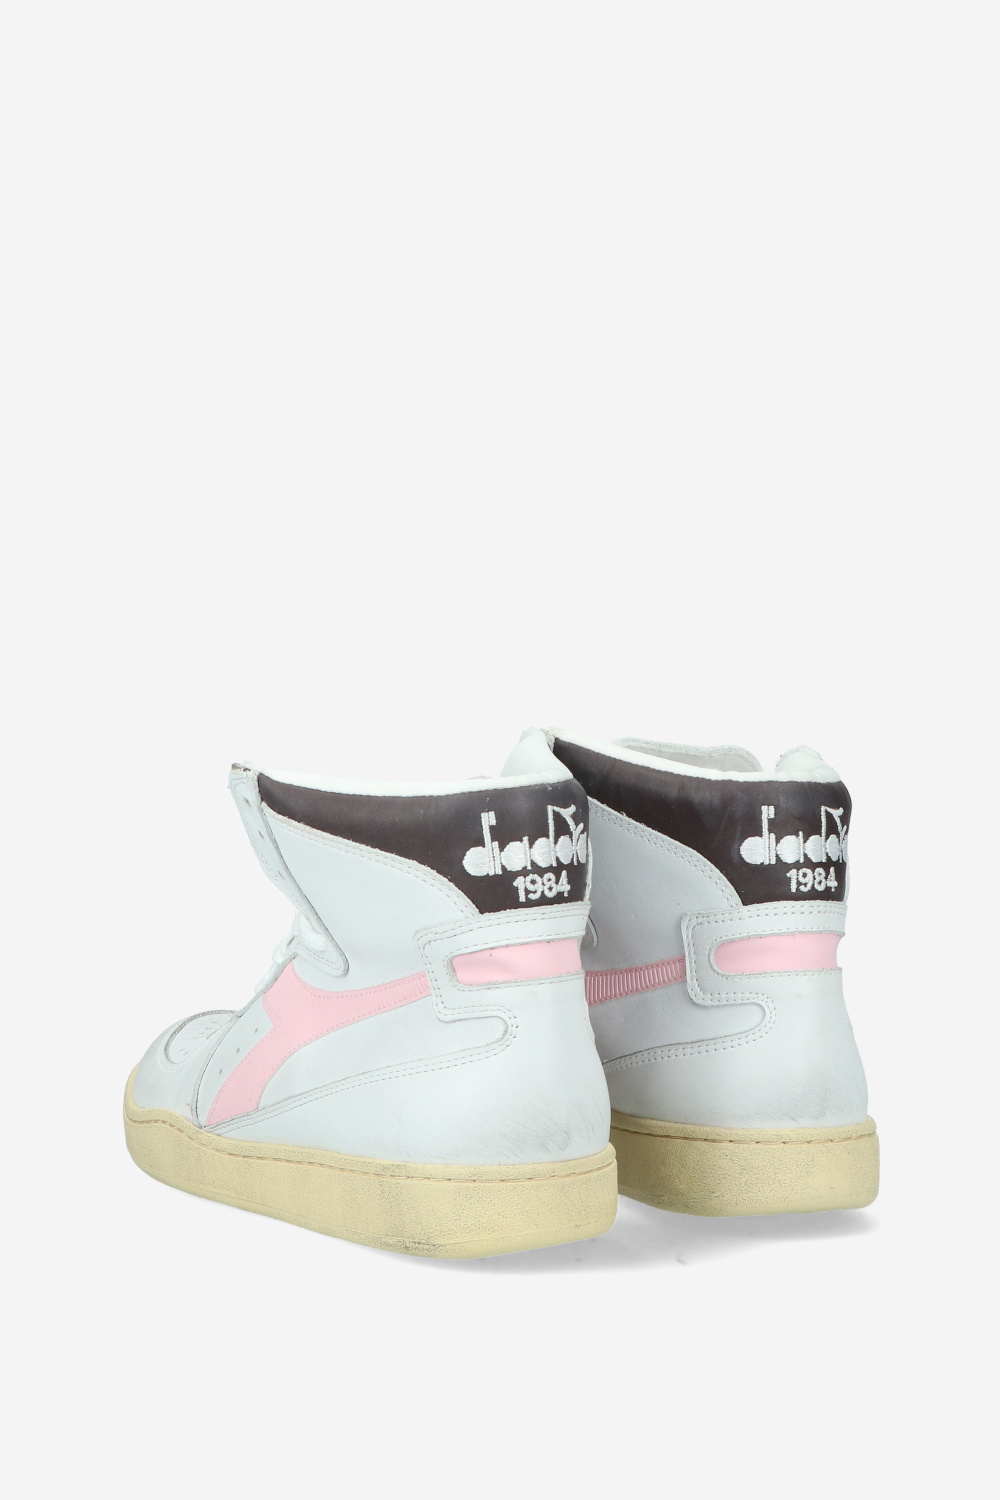 Diadora Sneakers White